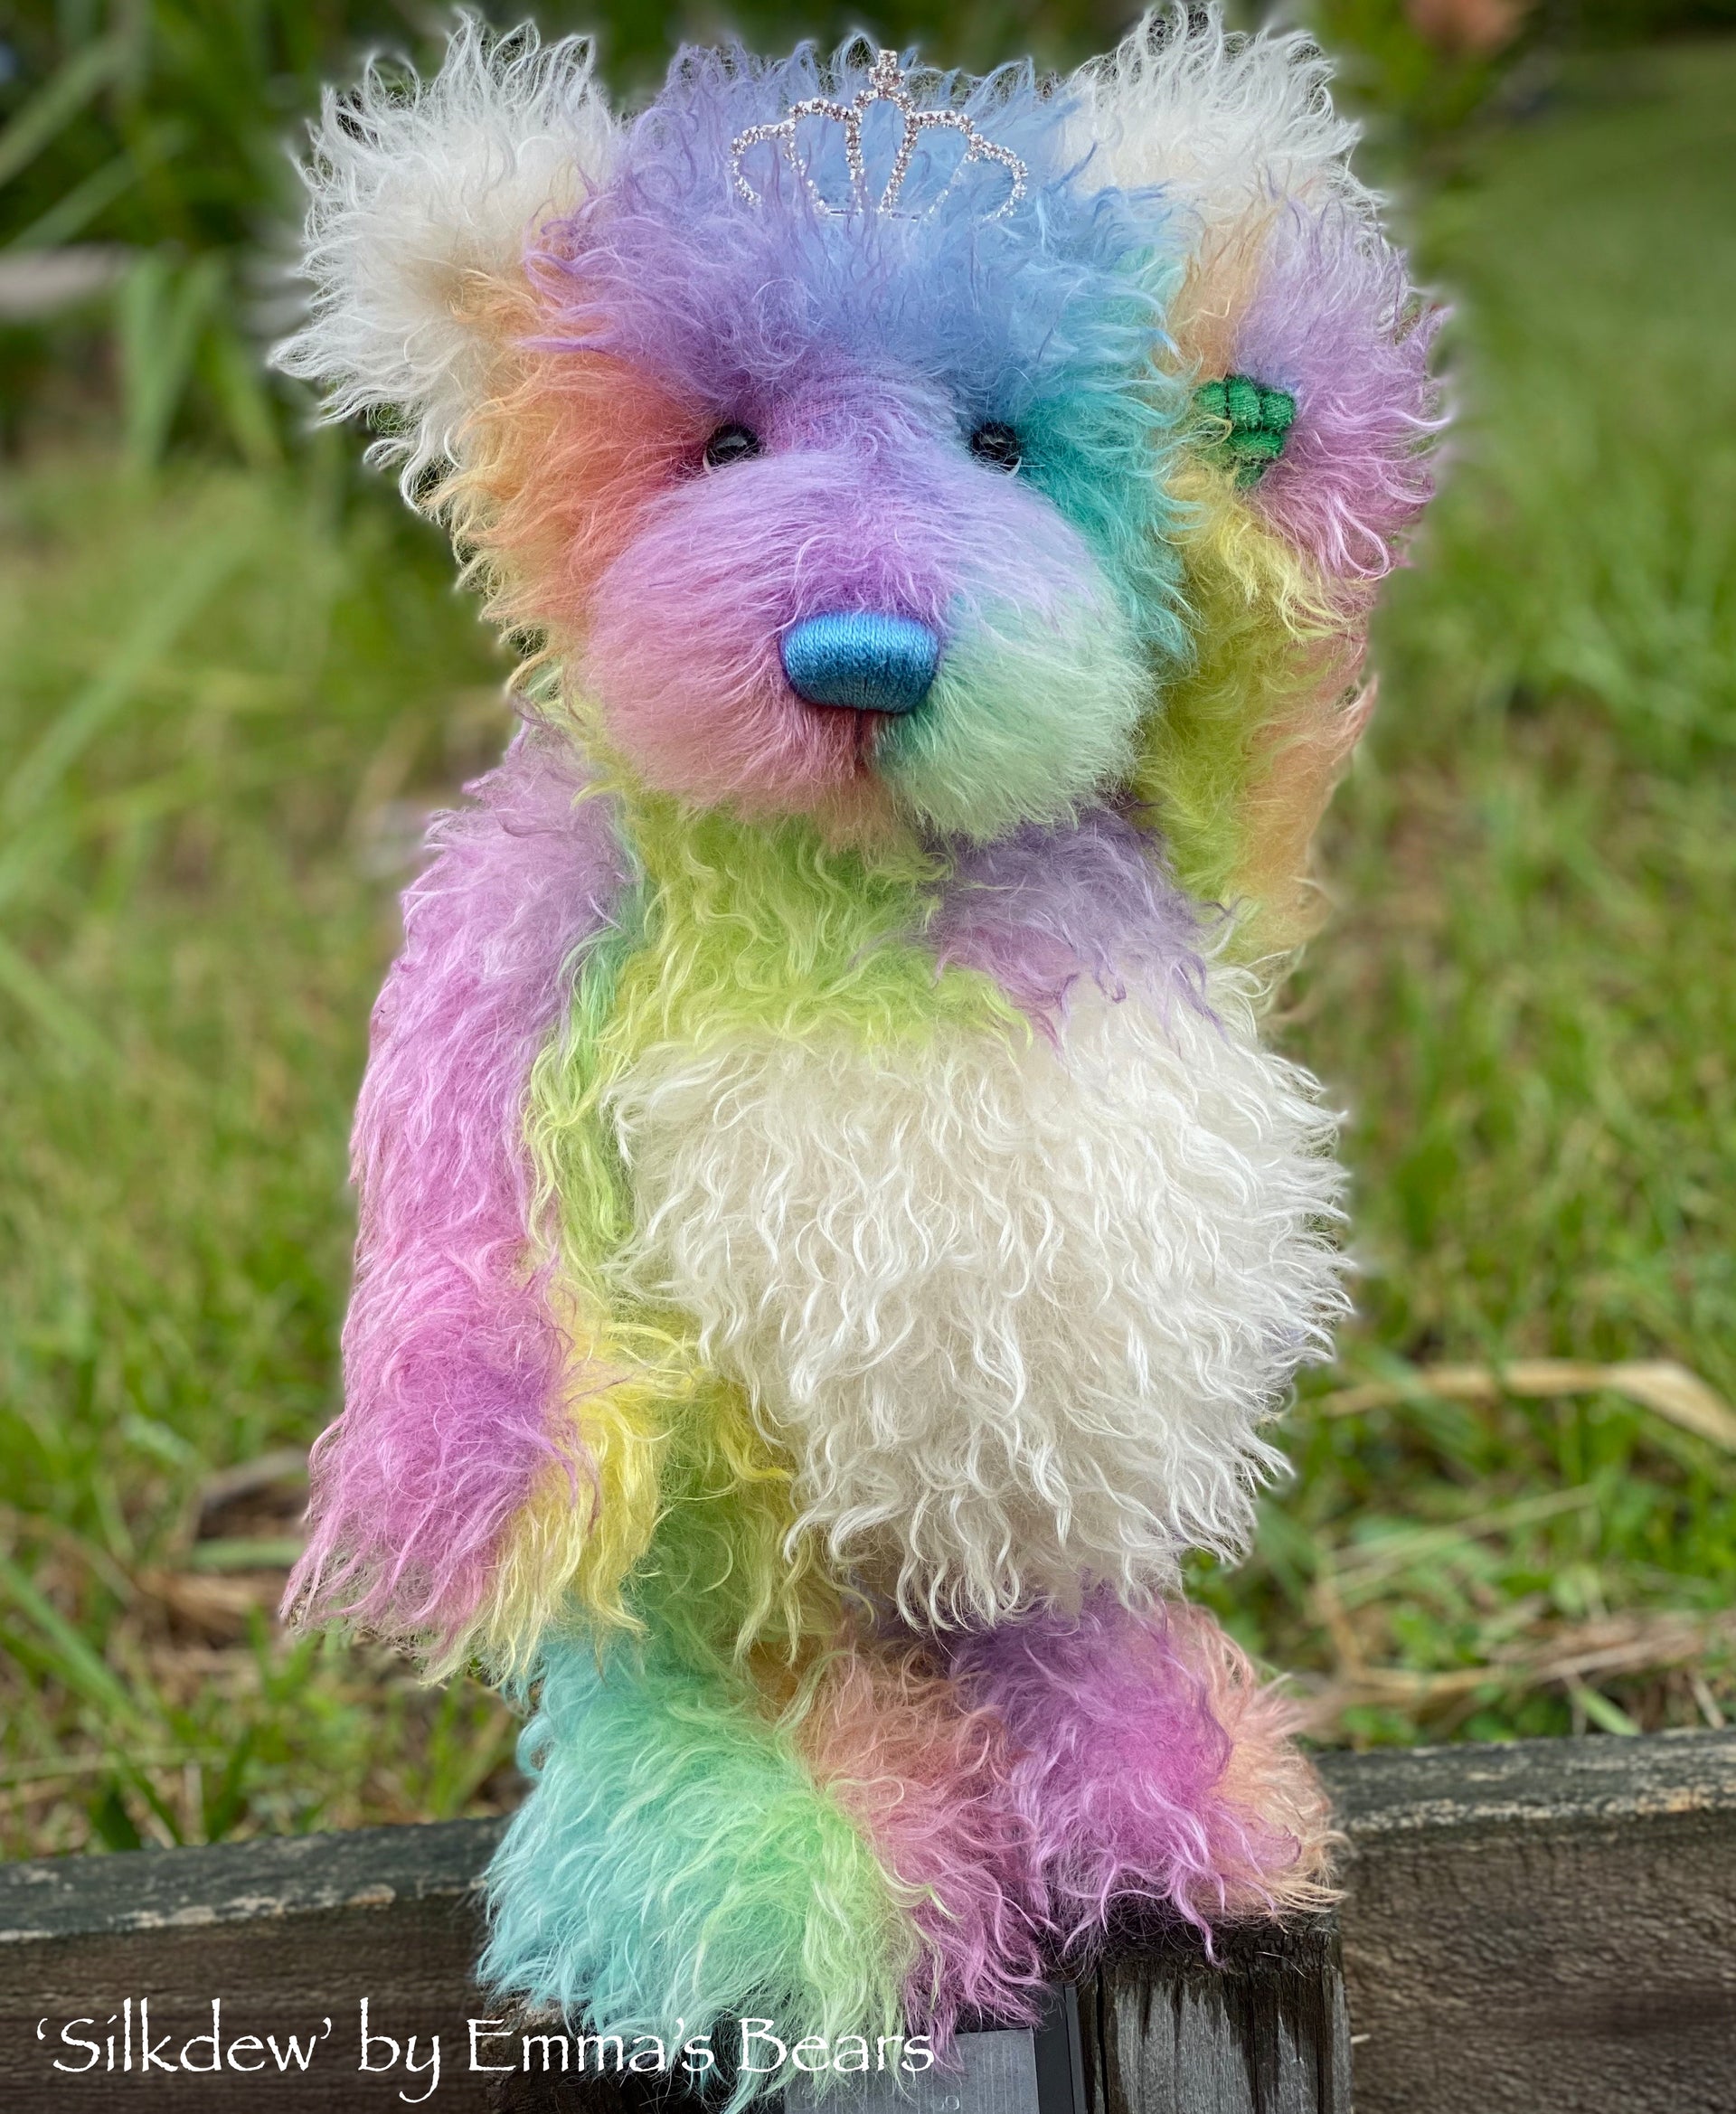 Silkdew - 17" hand dyed rainbow mohair bear by Emmas Bears - OOAK